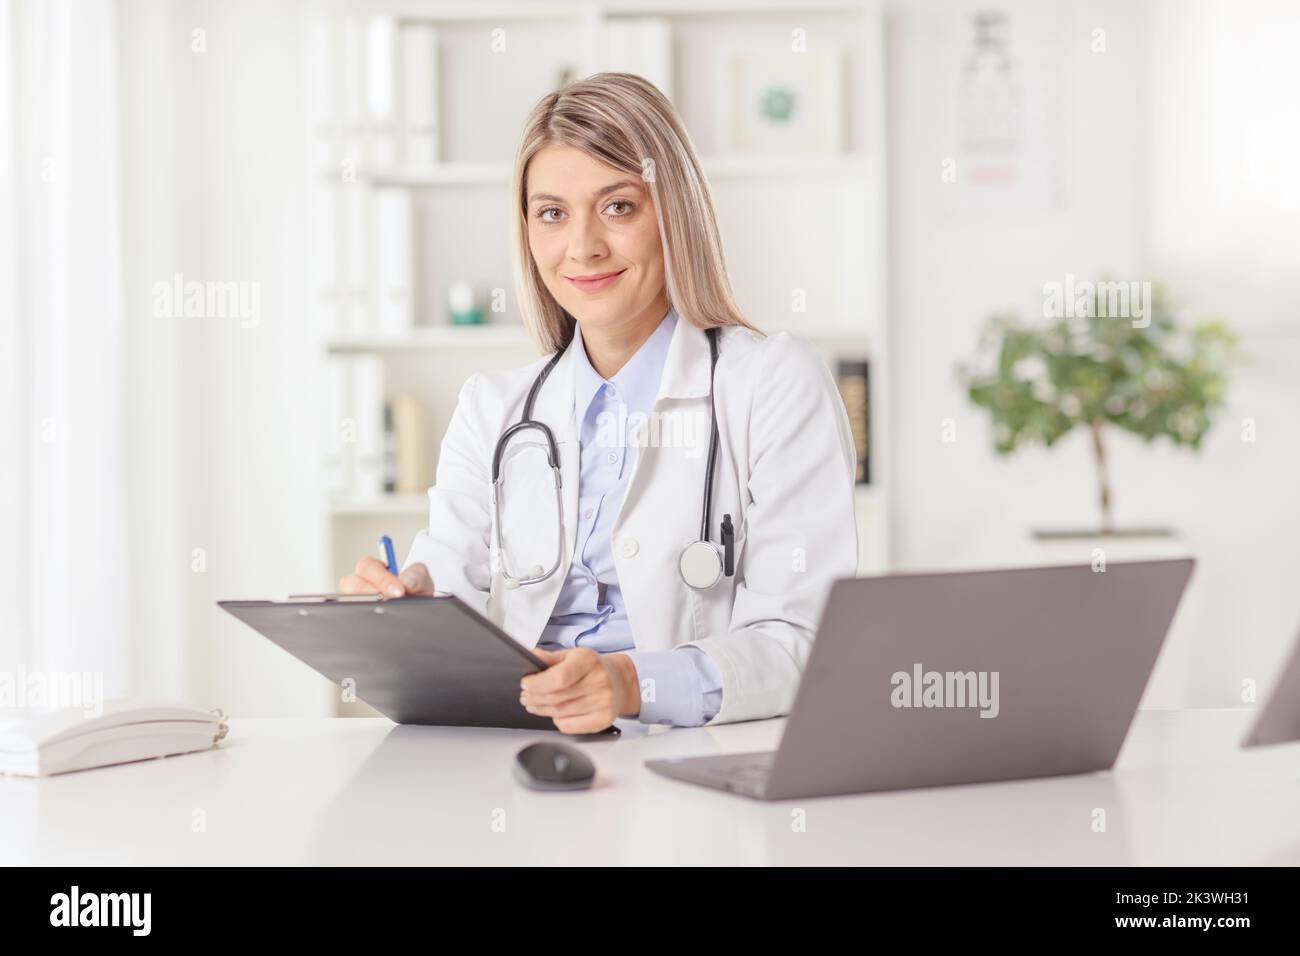 Joven doctora sentada en un consultorio y escribiendo un documento en un escritorio con ordenador portátil Foto de stock